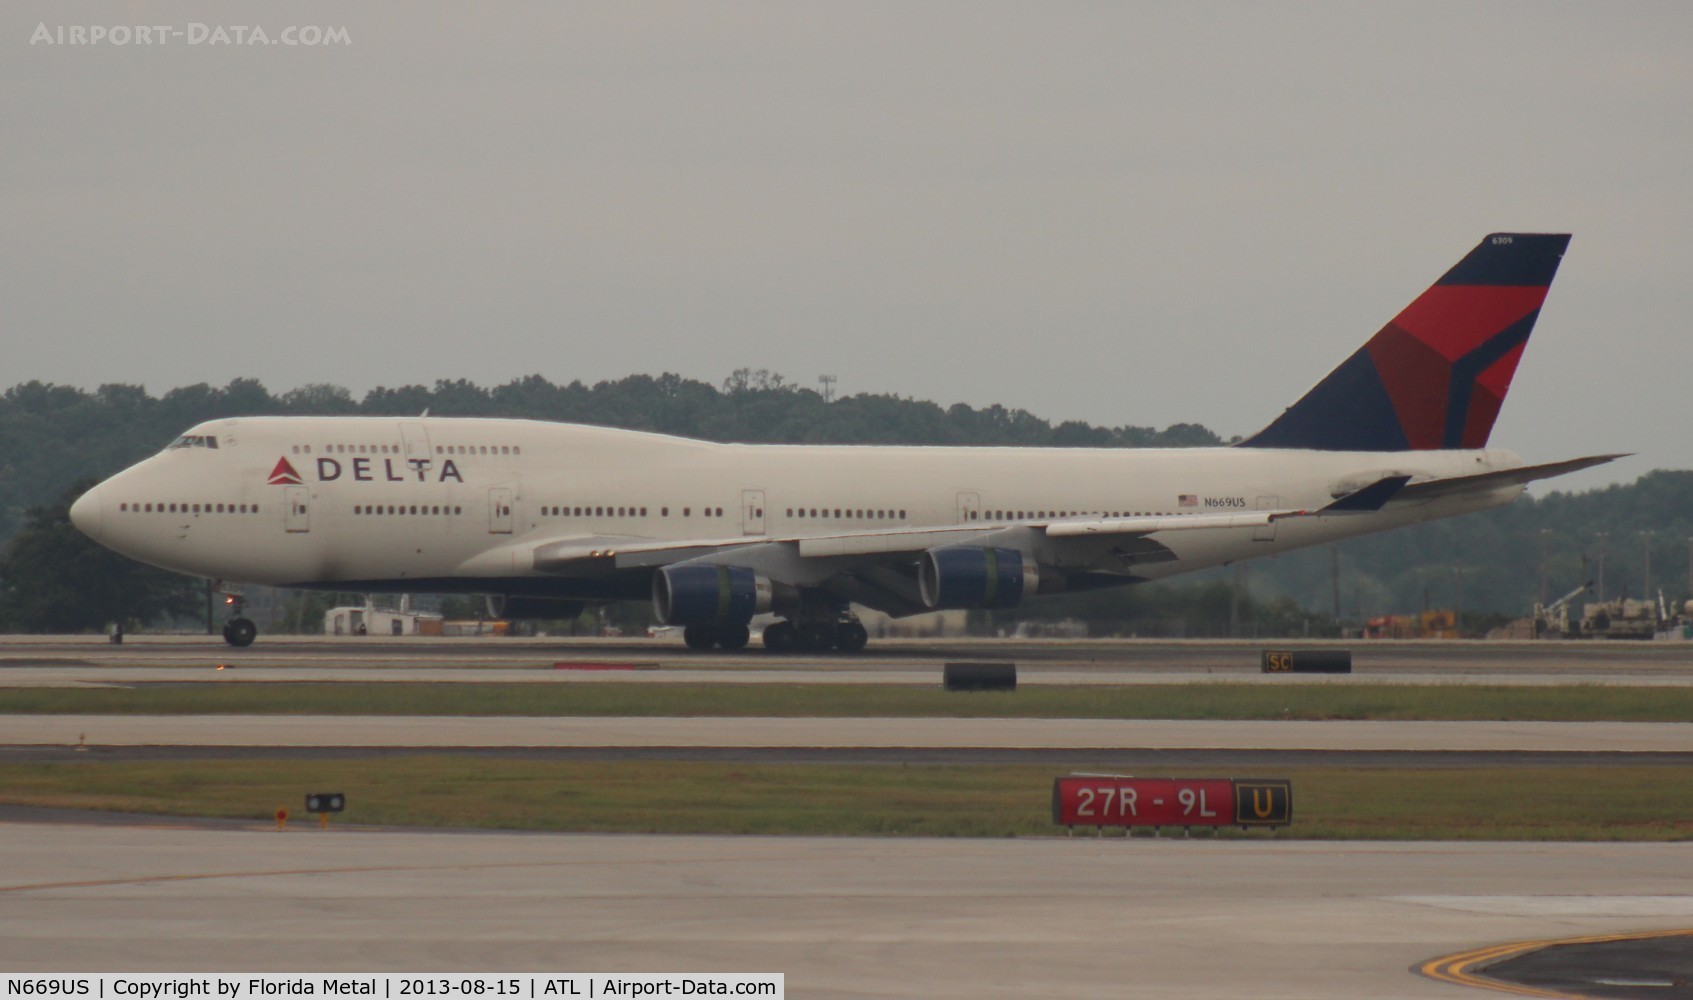 N669US, 1990 Boeing 747-451 C/N 24224, Delta 747-400